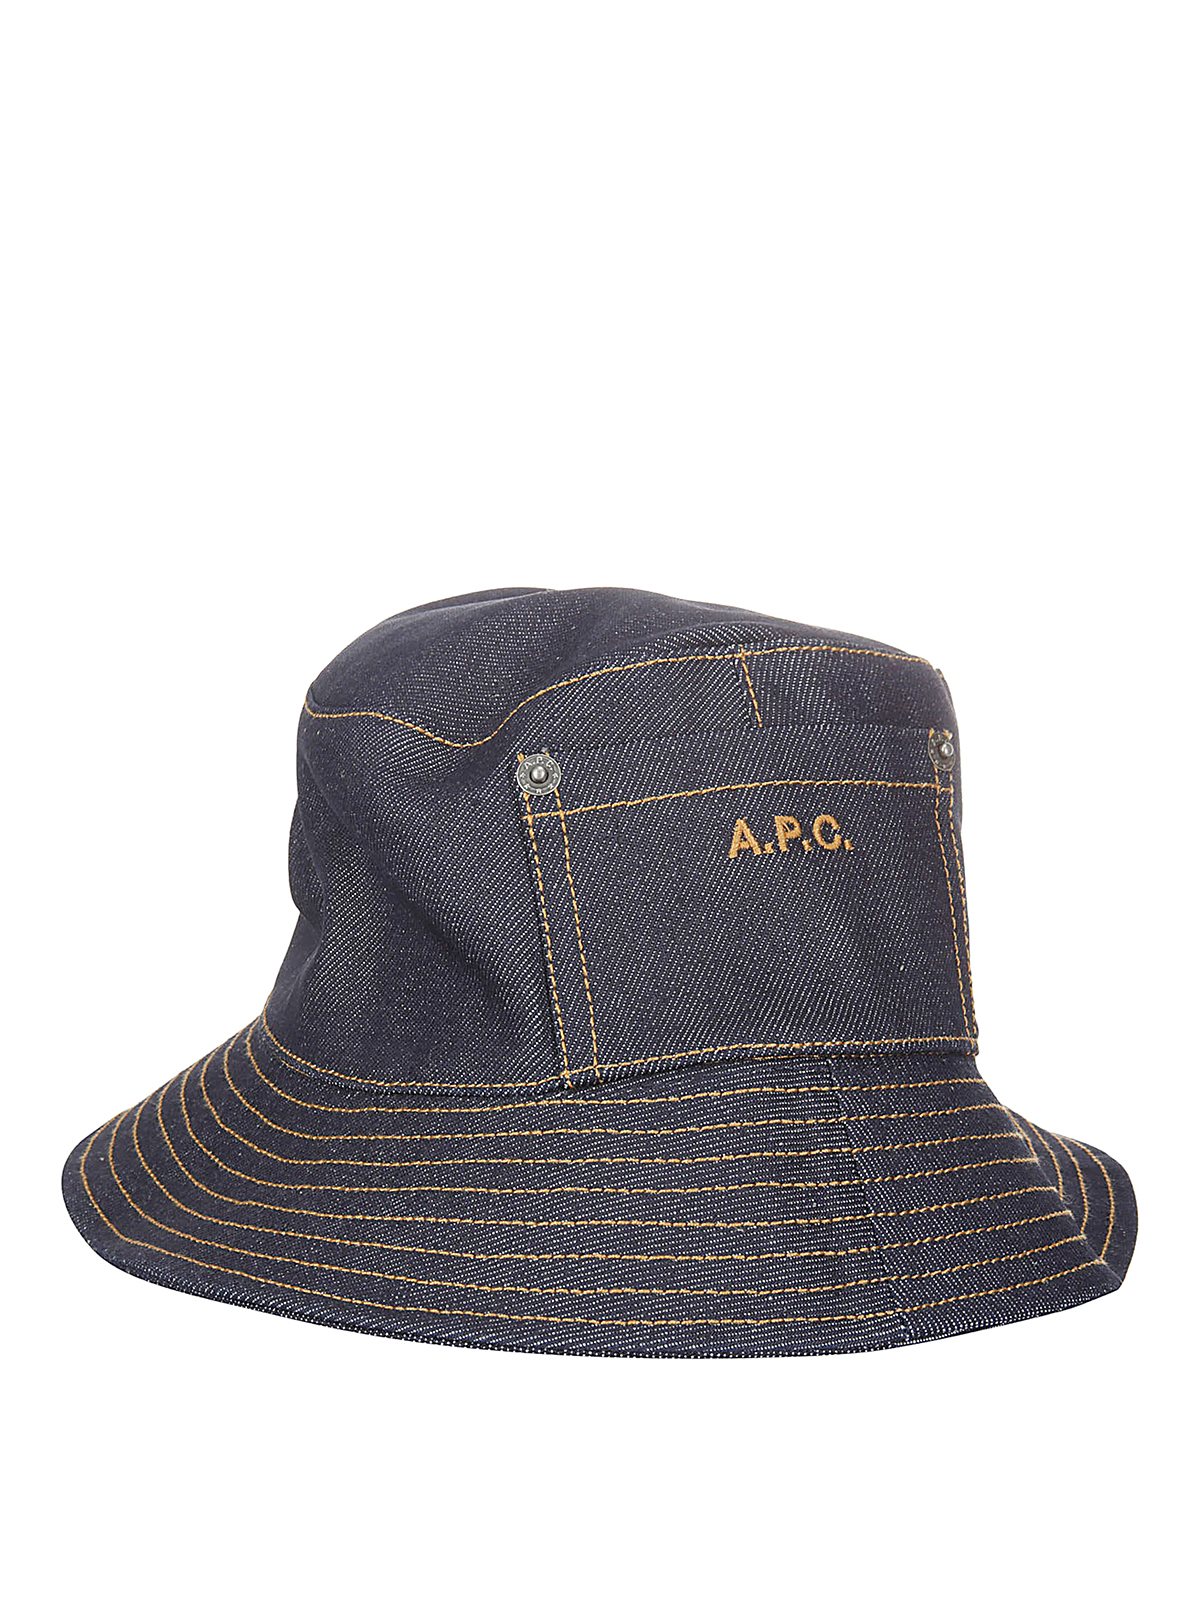 Apc A.p.c. Logo Embroidered Bucket Hat In Dark Wash